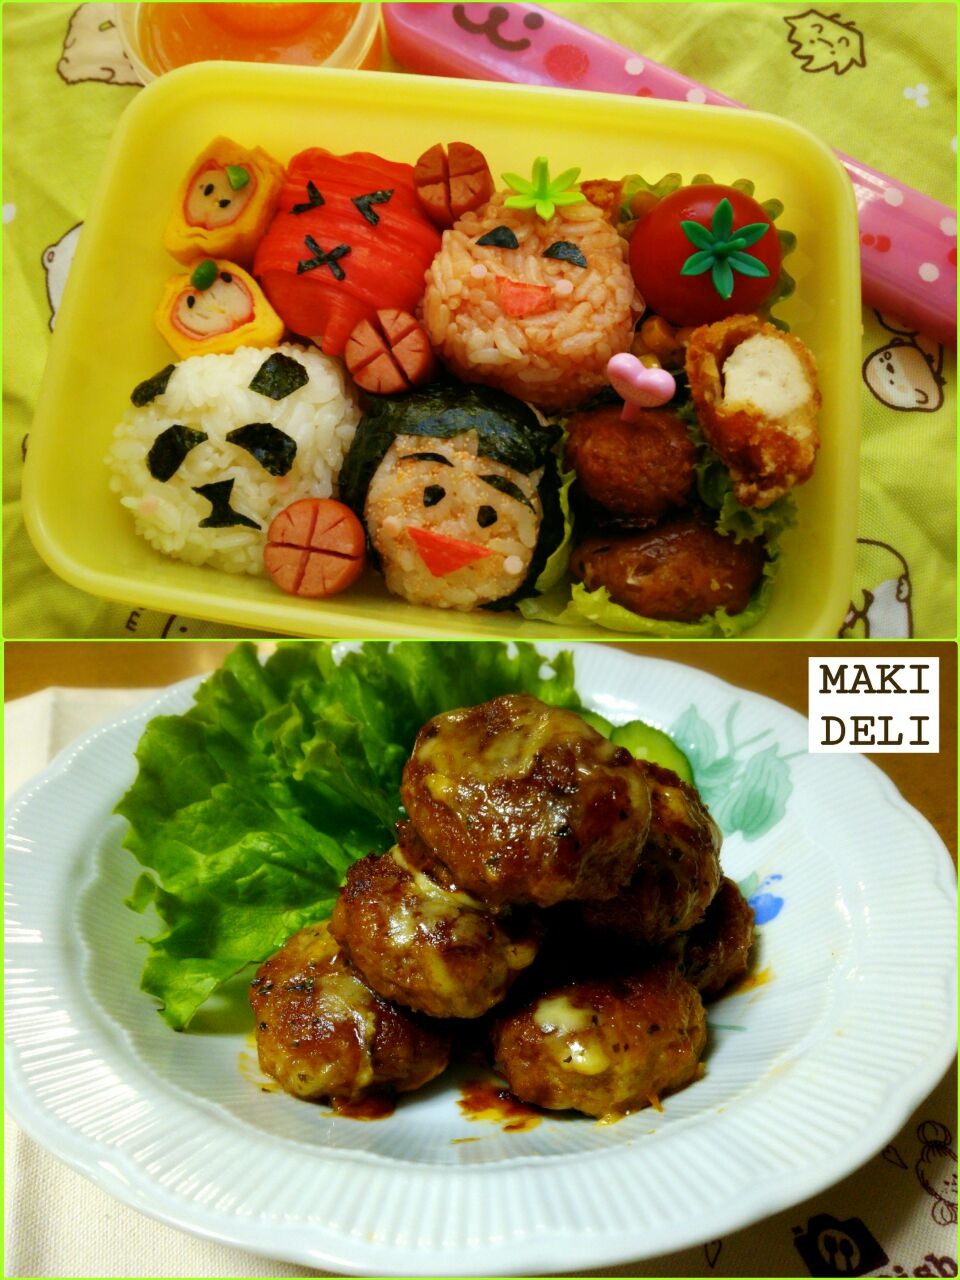 奥薗壽子さんレシピのもちもちミートボール入り和歌山名物弁当なんだな…?